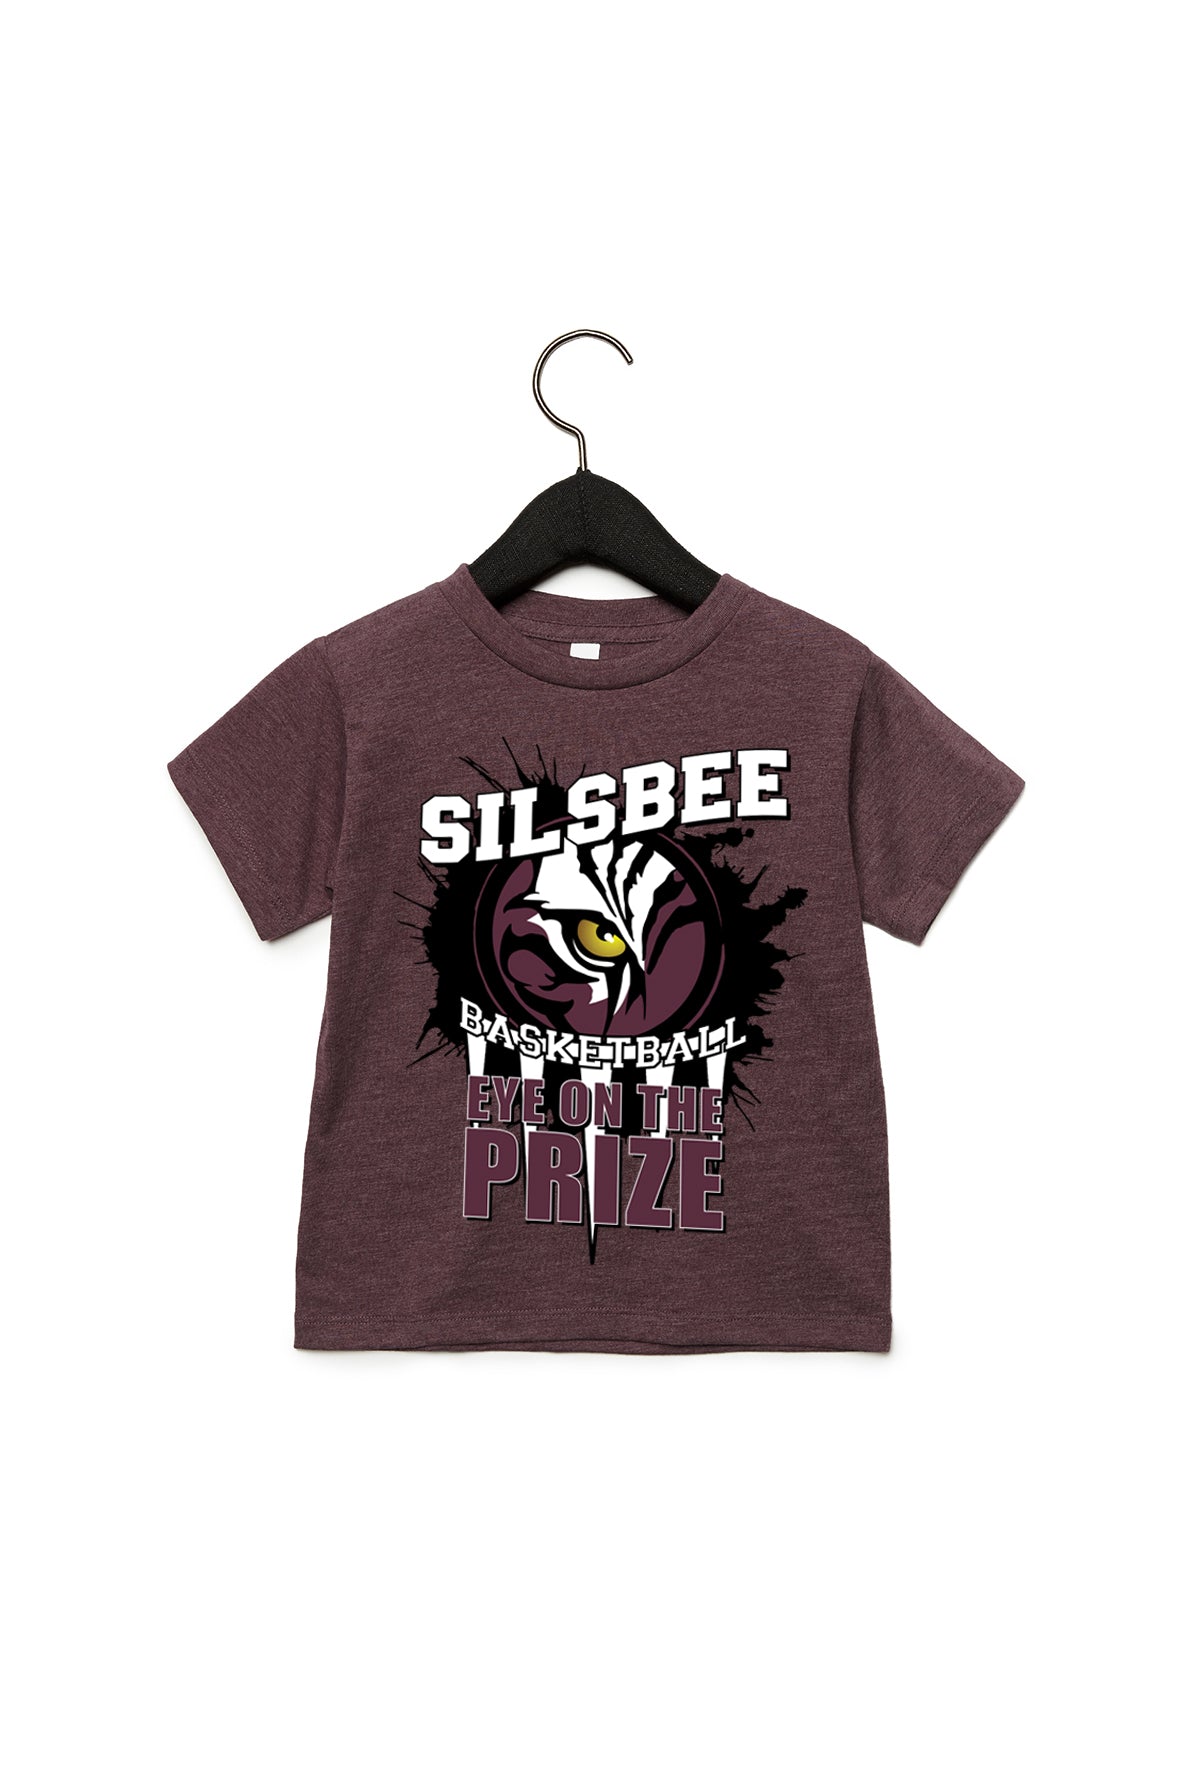 2019 Silsbee High School Basketball Toddler T-Shirt/Hoodie